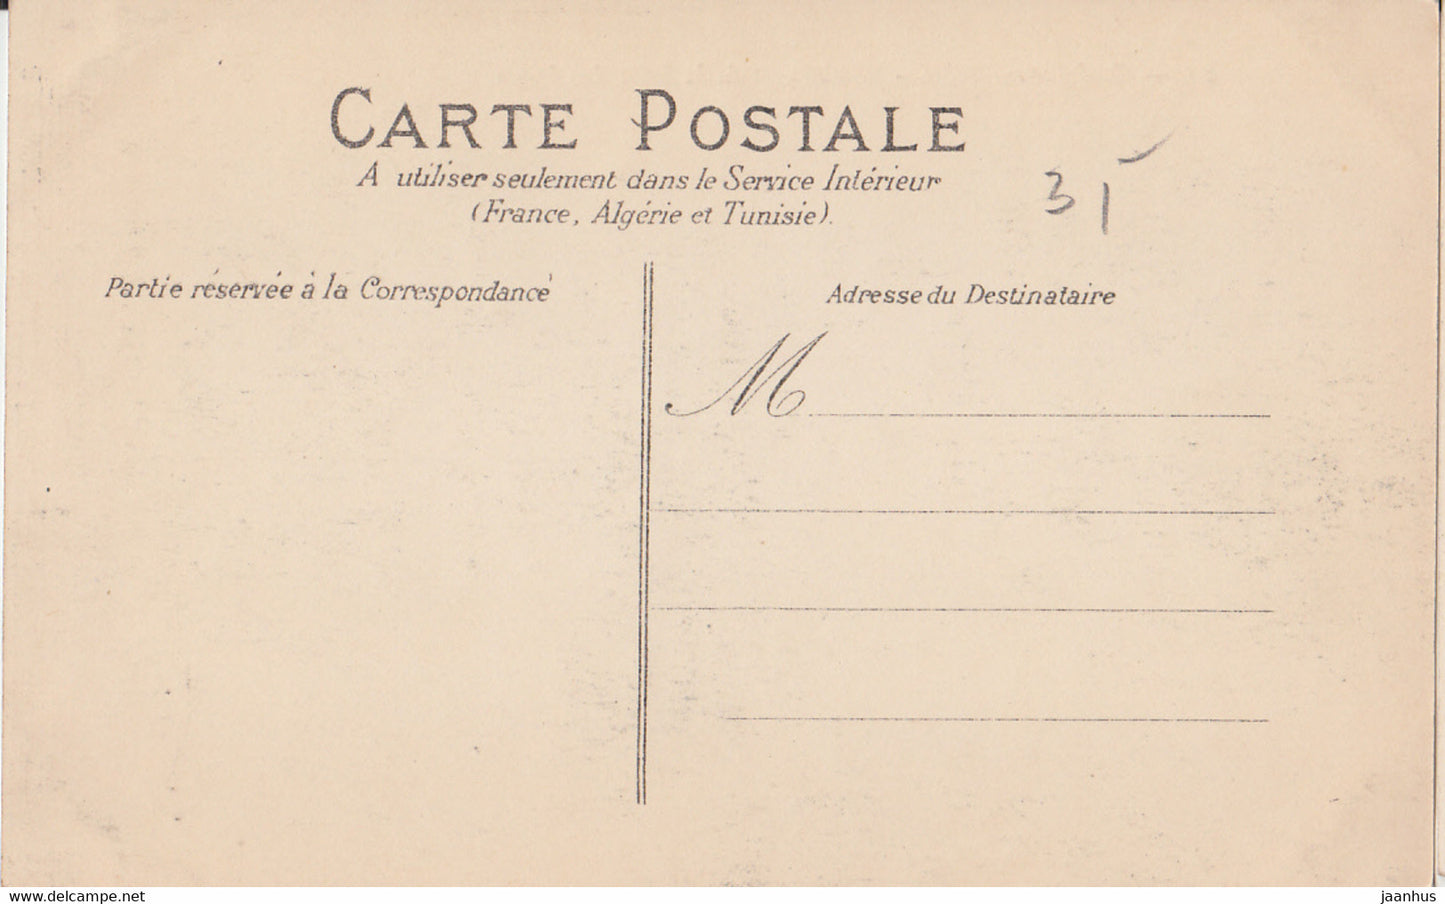 Boulogne sur Seine - Rond Point de la Salle des Fetes - tram - old postcard - 60 - 1904 - France - unused